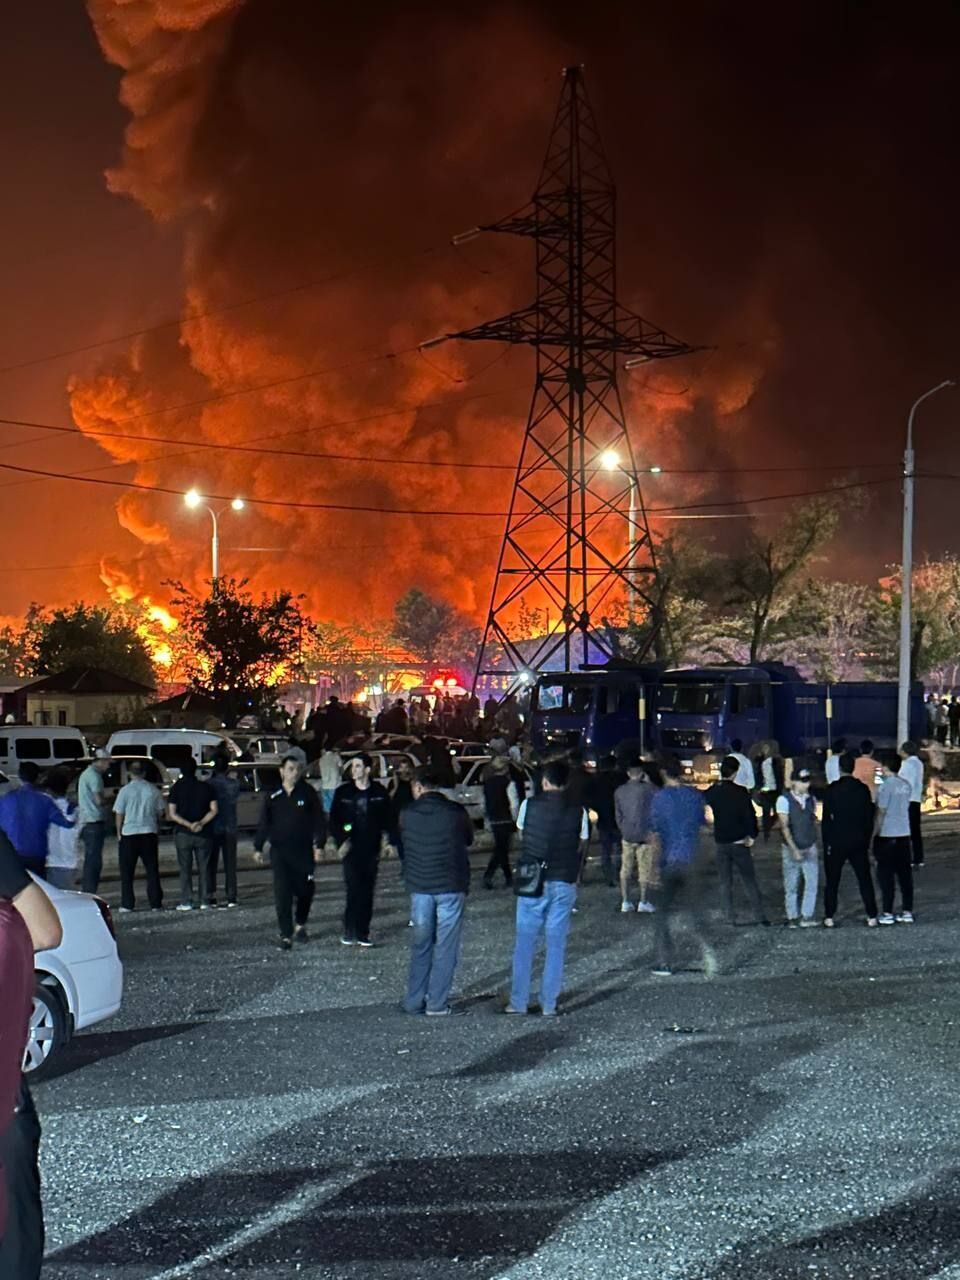 Мощный взрыв раздался в Ташкенте возле аэропорта, пожар тушили всю ночь: что известно (фото, видео)